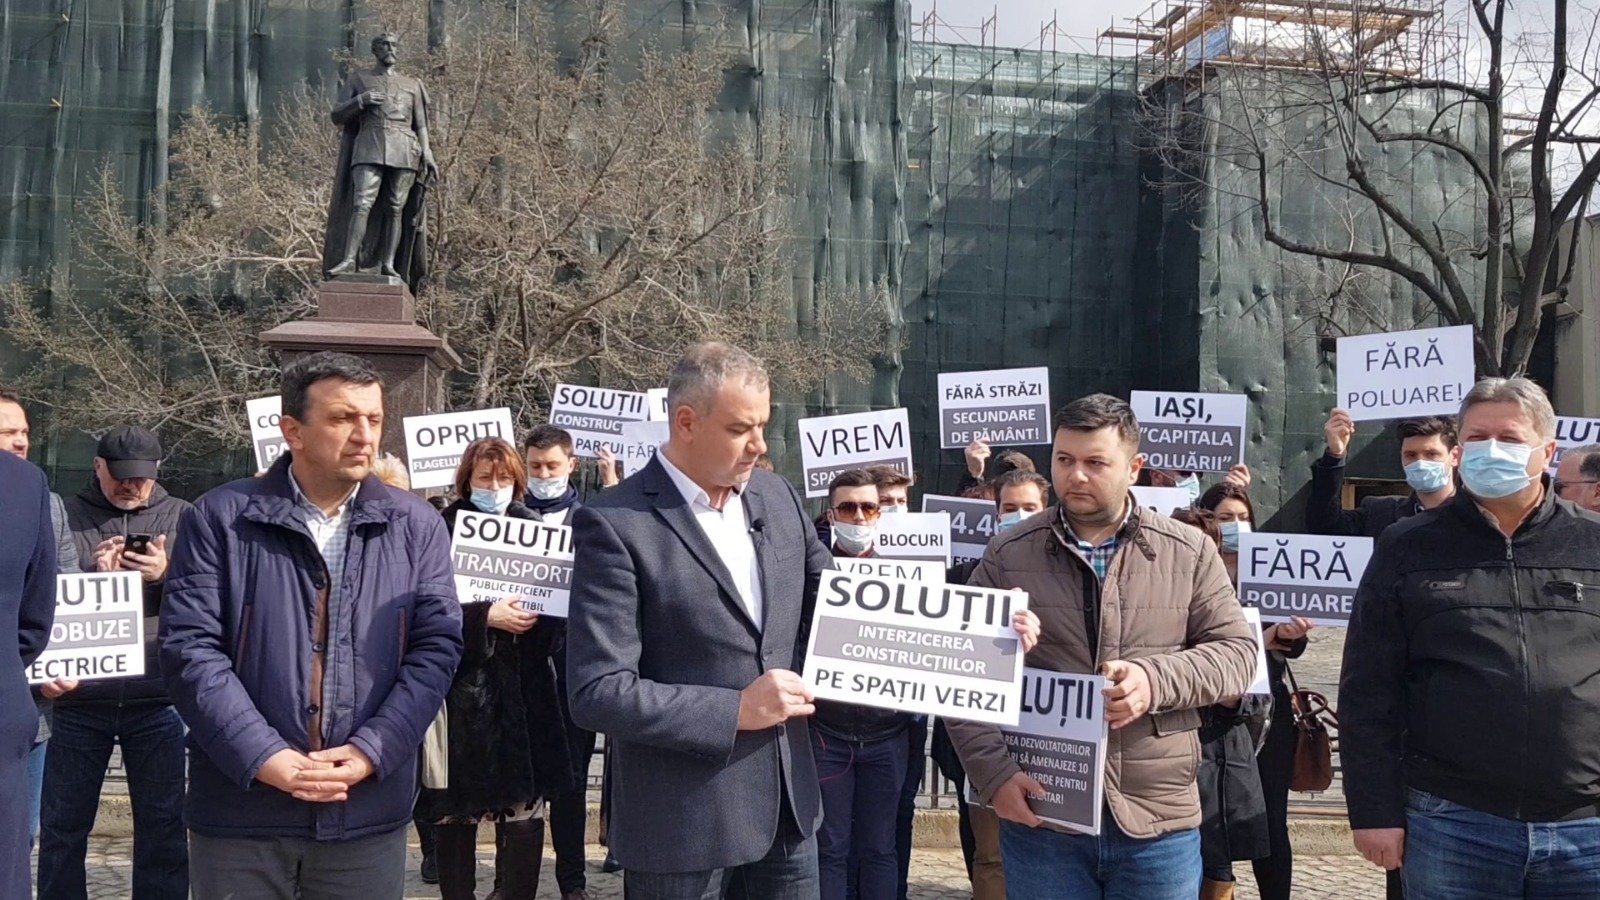  Conferință de presă pe pietonalul Ștefan cel Mare, în fața Primăriei Iași, pentru a trage un semnal de alarmă cu privire la nivelul ridicat de poluare din oraș